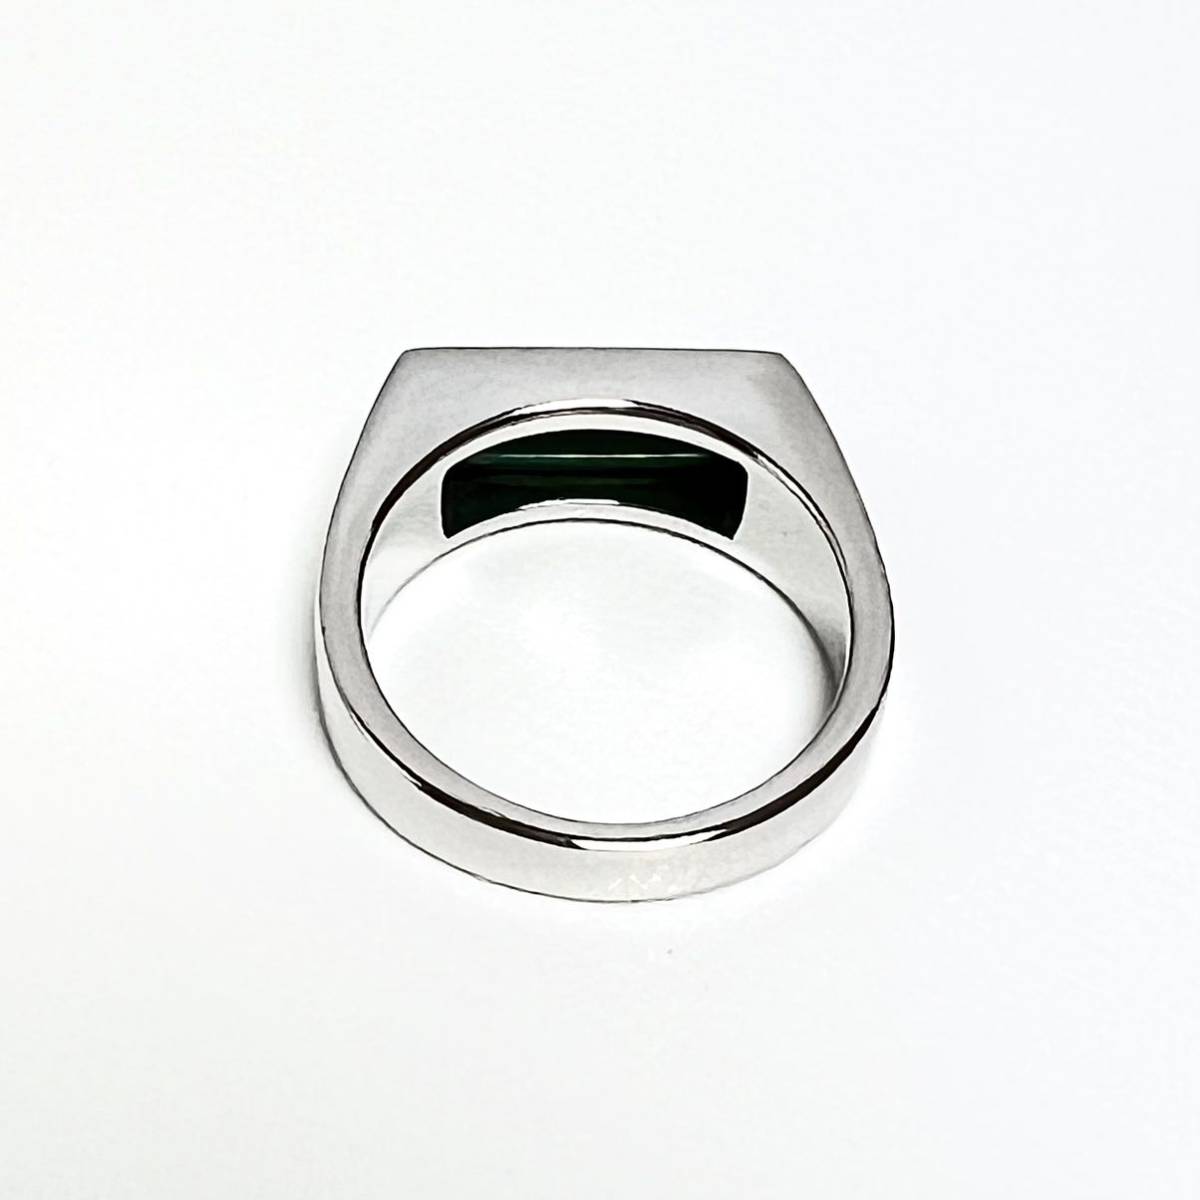 60 новый товар Tom дерево PeakyRingpi- кольцо для ключей mala кайт Peaky Ring Malachitepi- кольцо для ключей кольцо серебряный зеленый зеленый натуральный камень TOM